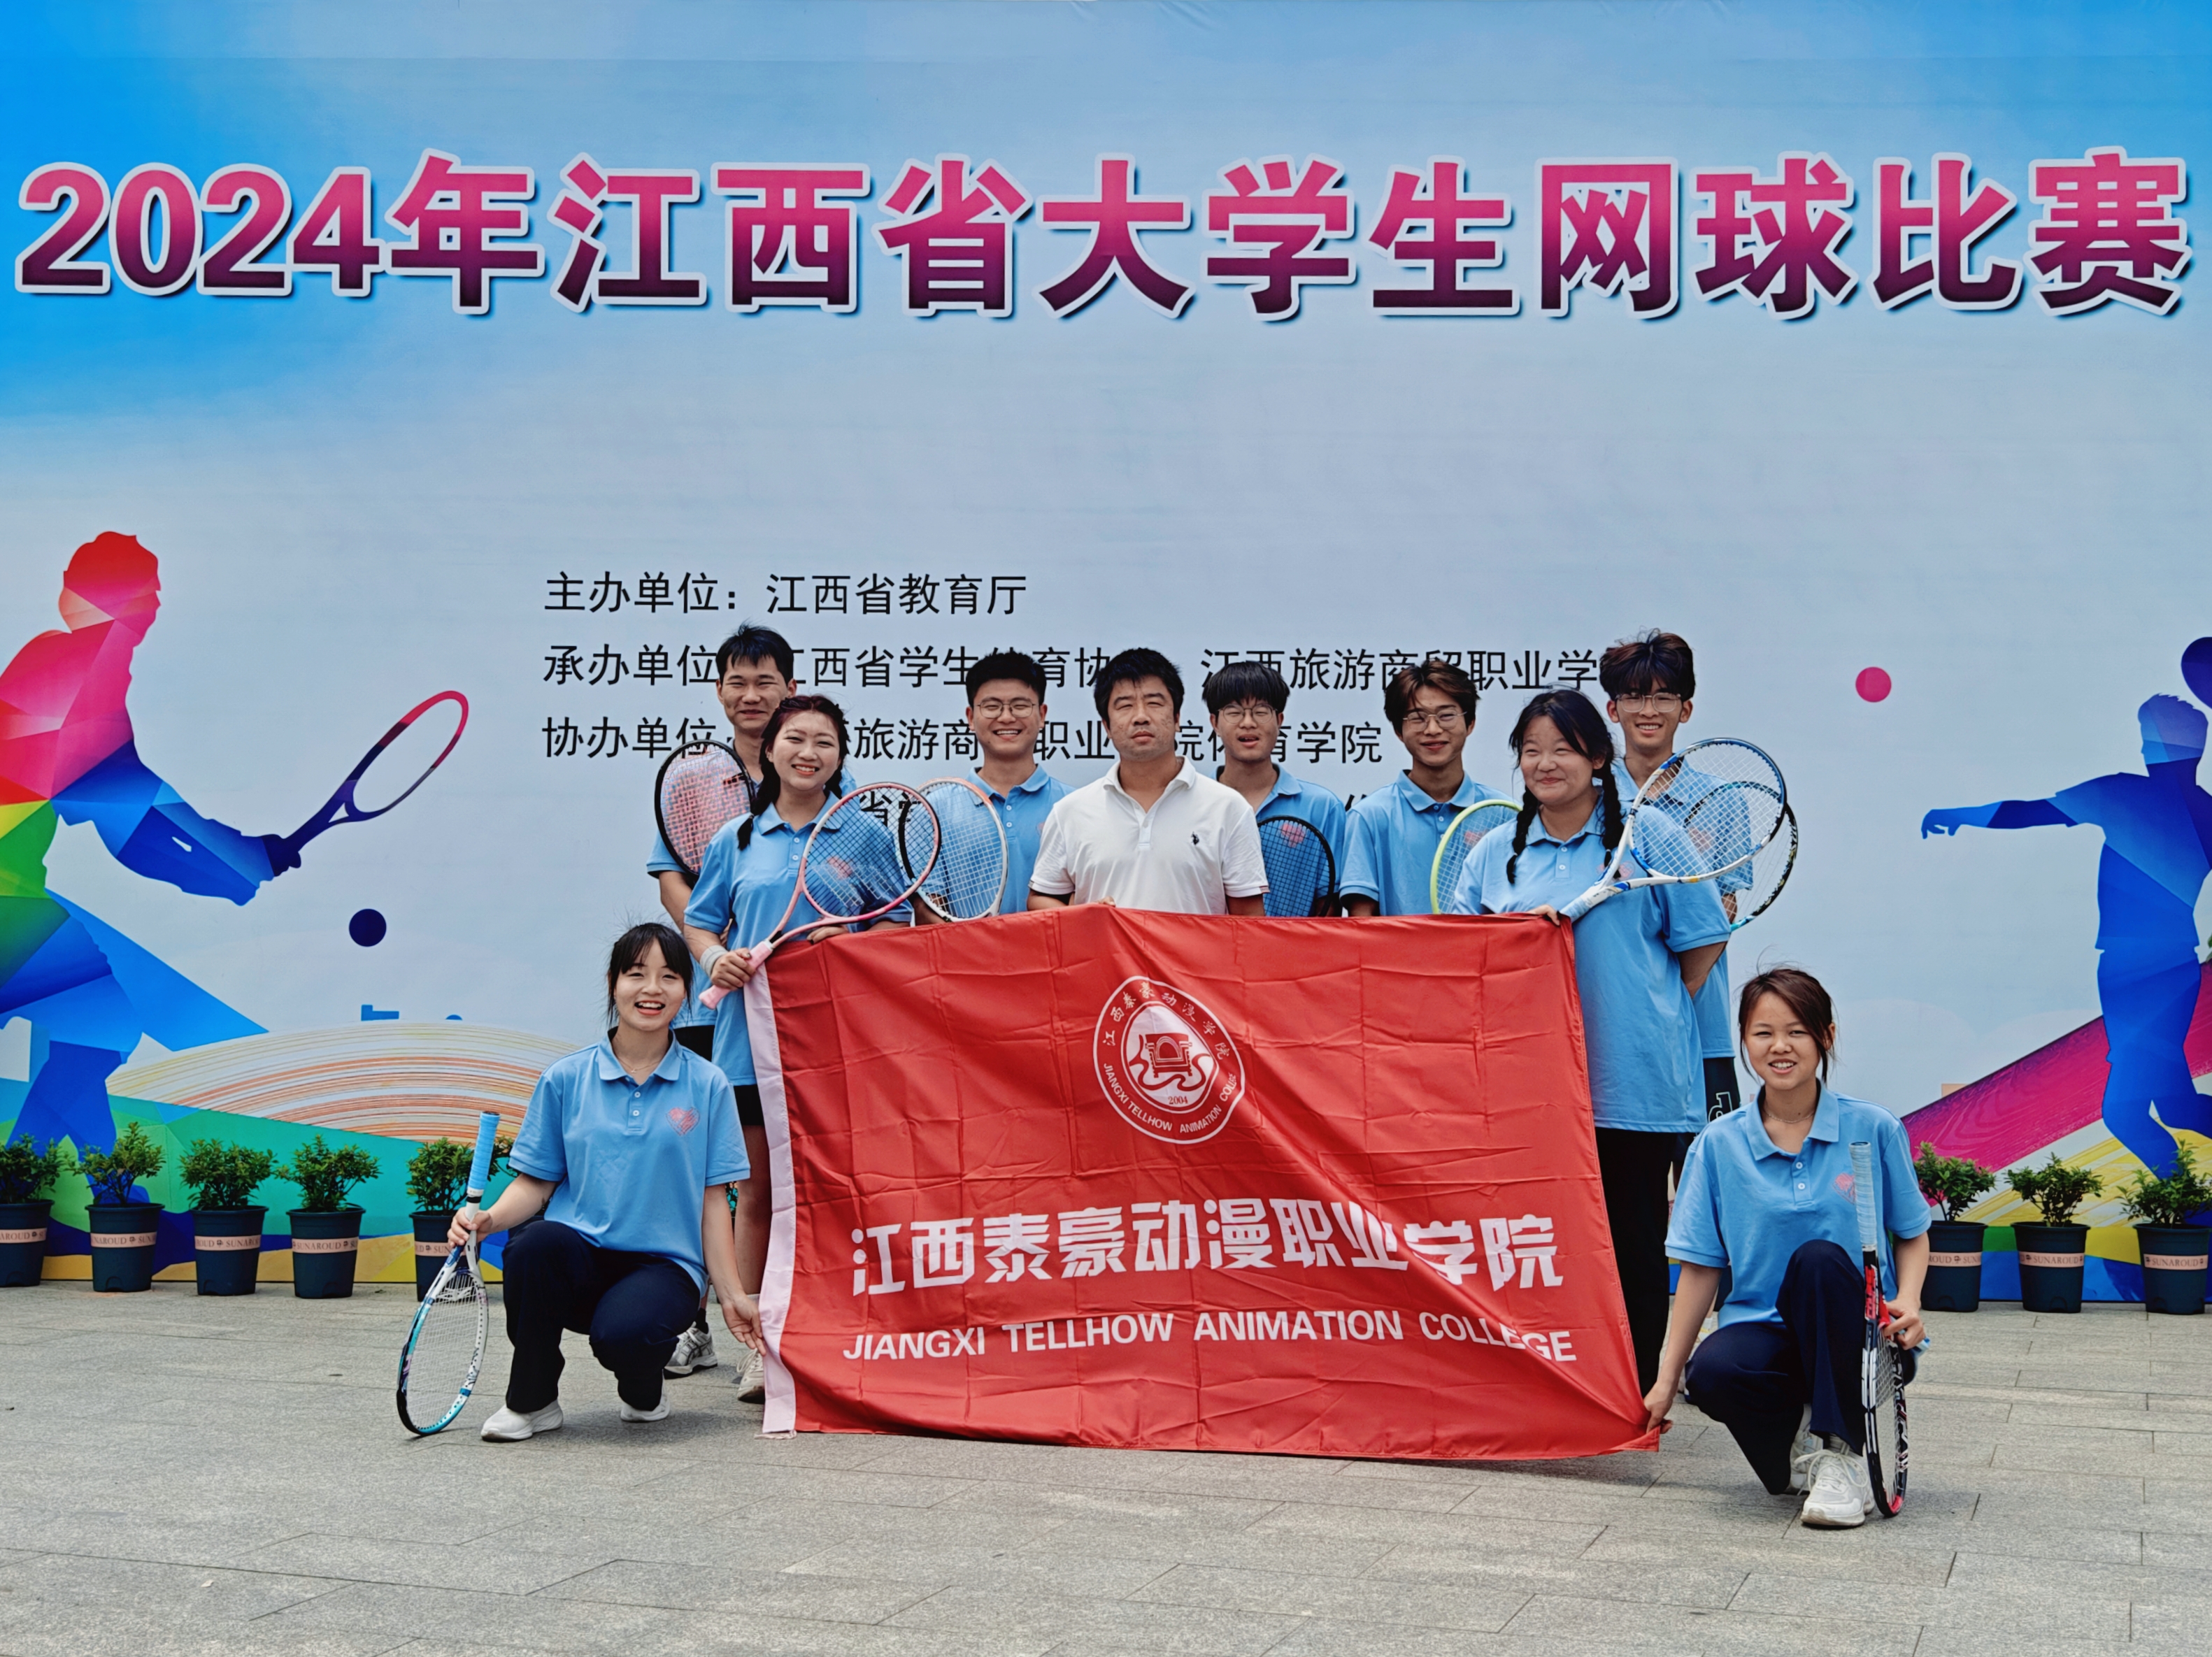 江西泰豪动漫职业学院网球队在2024年江西省大学生网球比赛中获佳绩